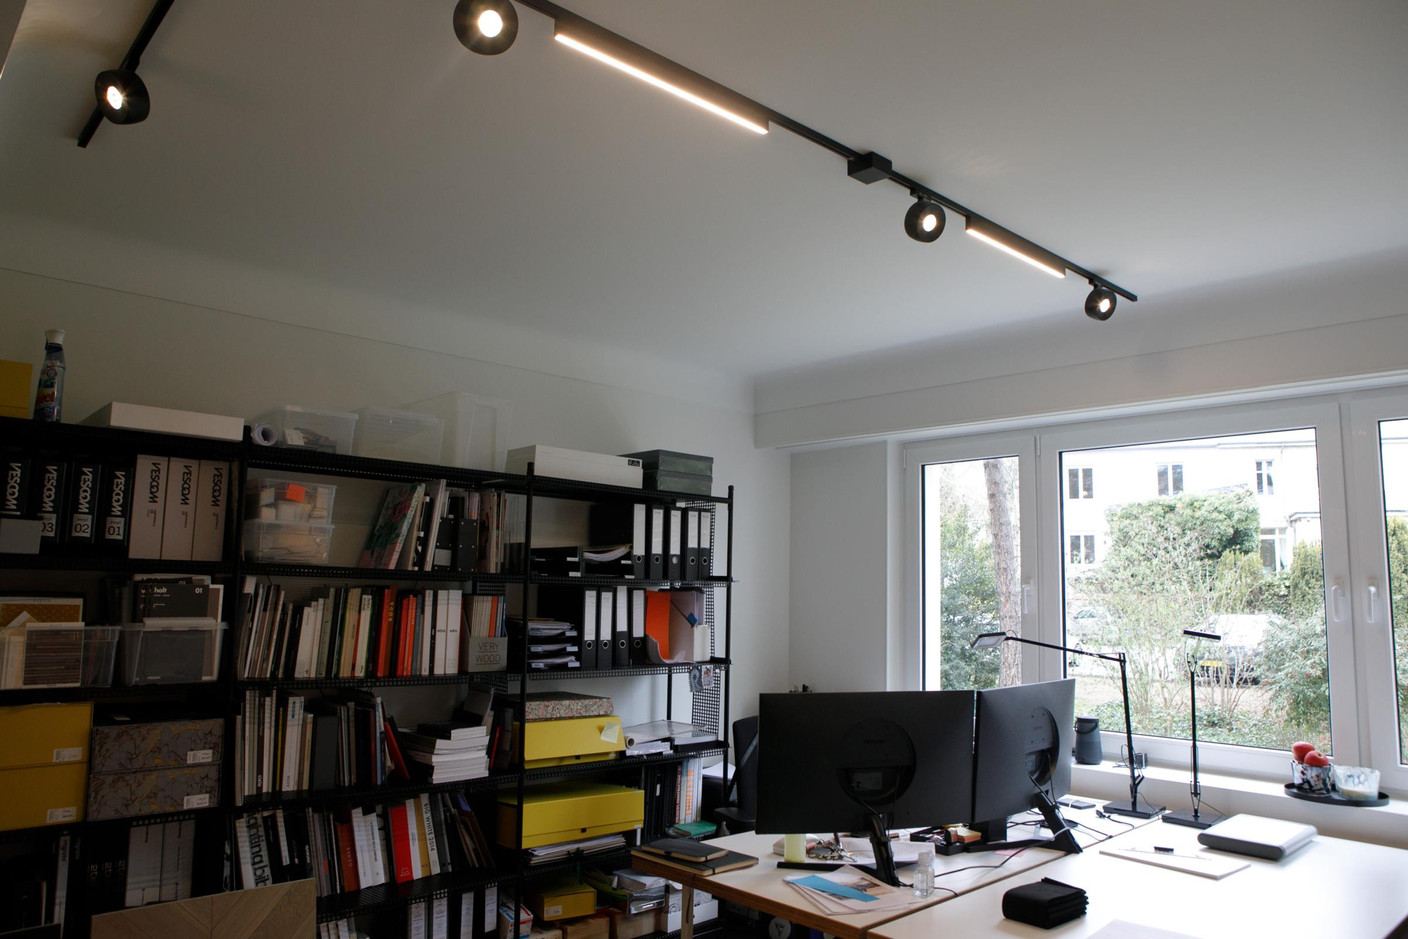 Les environnements de travail sont sobres et lumineux. (Photo: Matic Zorman / Maison Moderne)